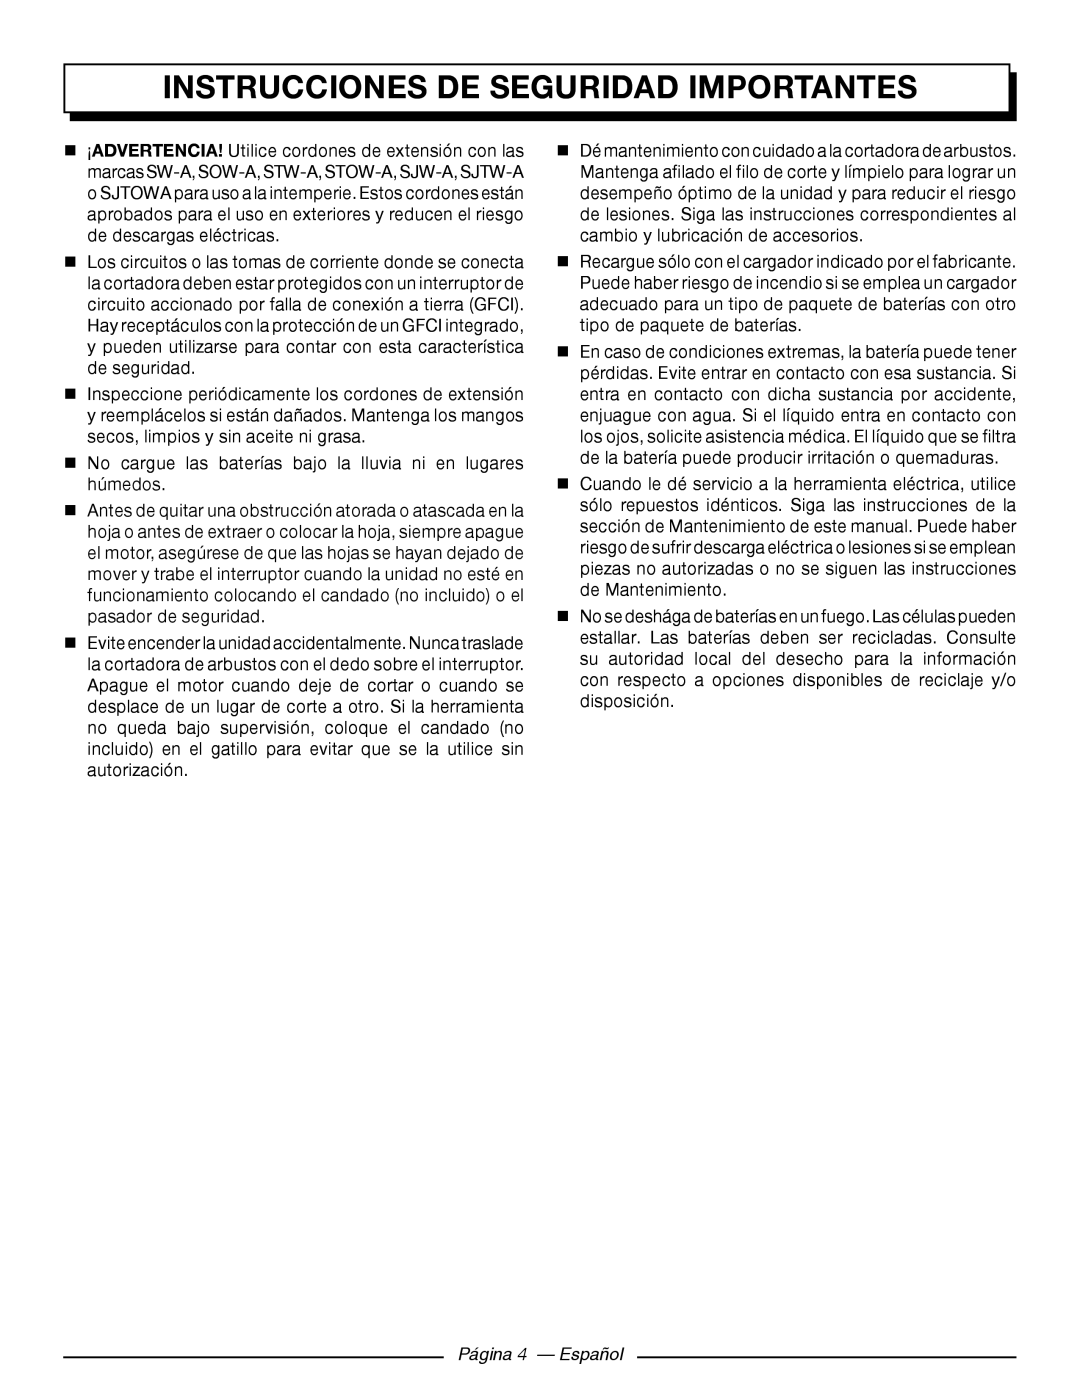 Homelite UT44171 manuel dutilisation Página 4 - Español, Instrucciones de seguridad importantes 